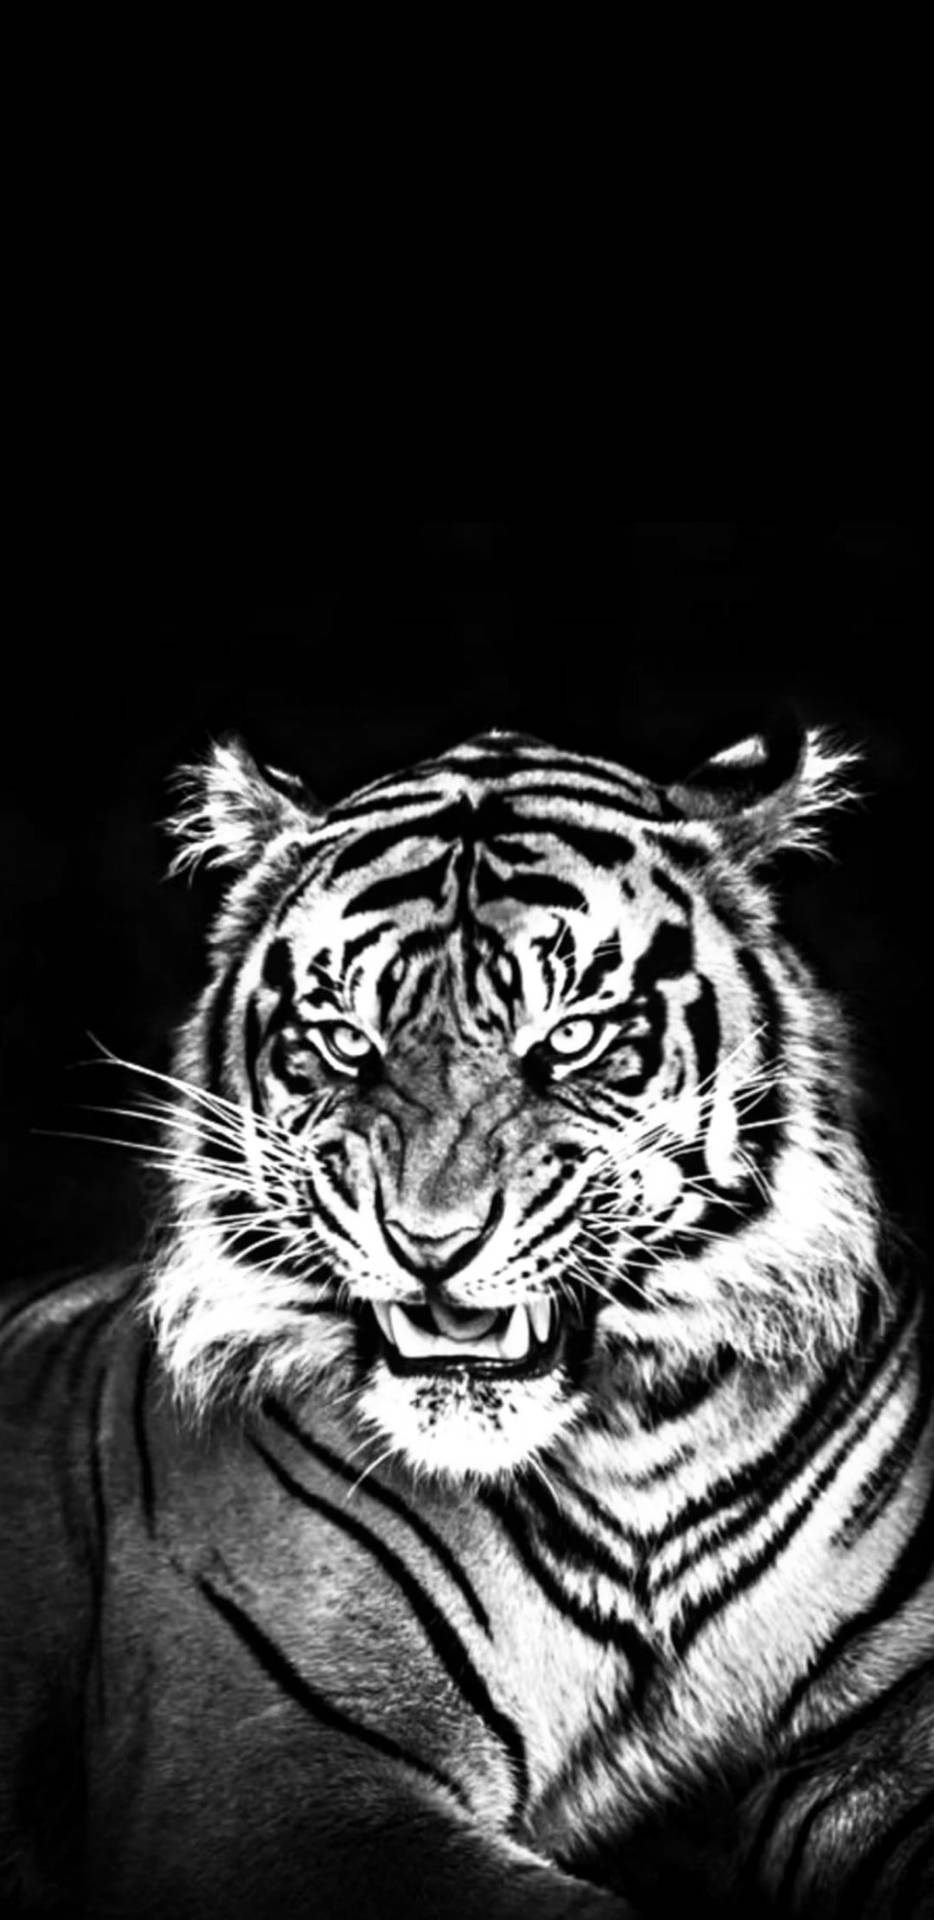 Black Tiger Portrait Image